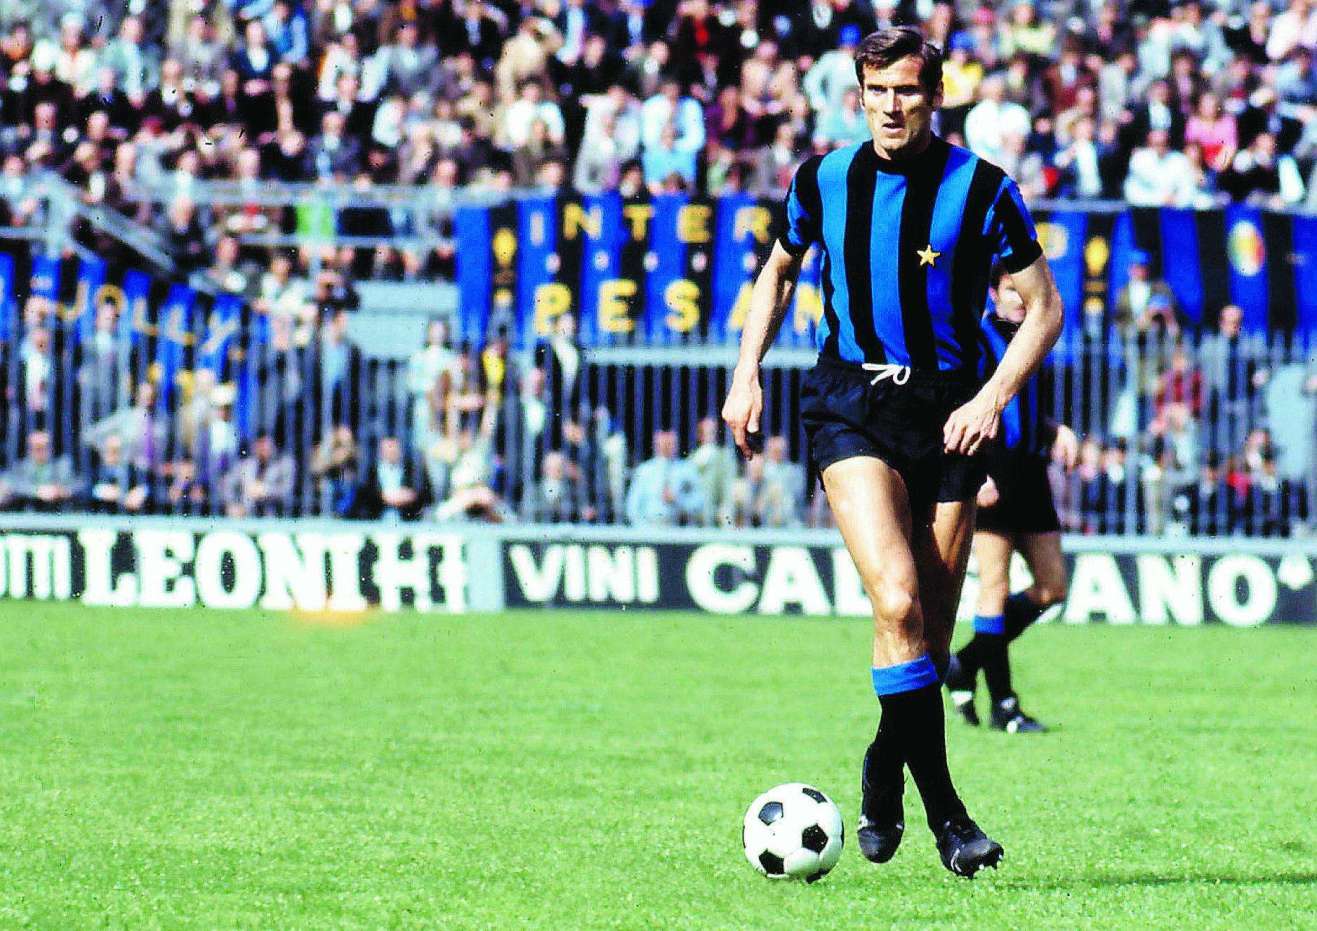 پرونده فوتبال ایتالیا- سری آ- ایتالیای دهه ۹۰- تاریخ فوتبال ایتالیا- هلنیو هررا- کاتناچیو